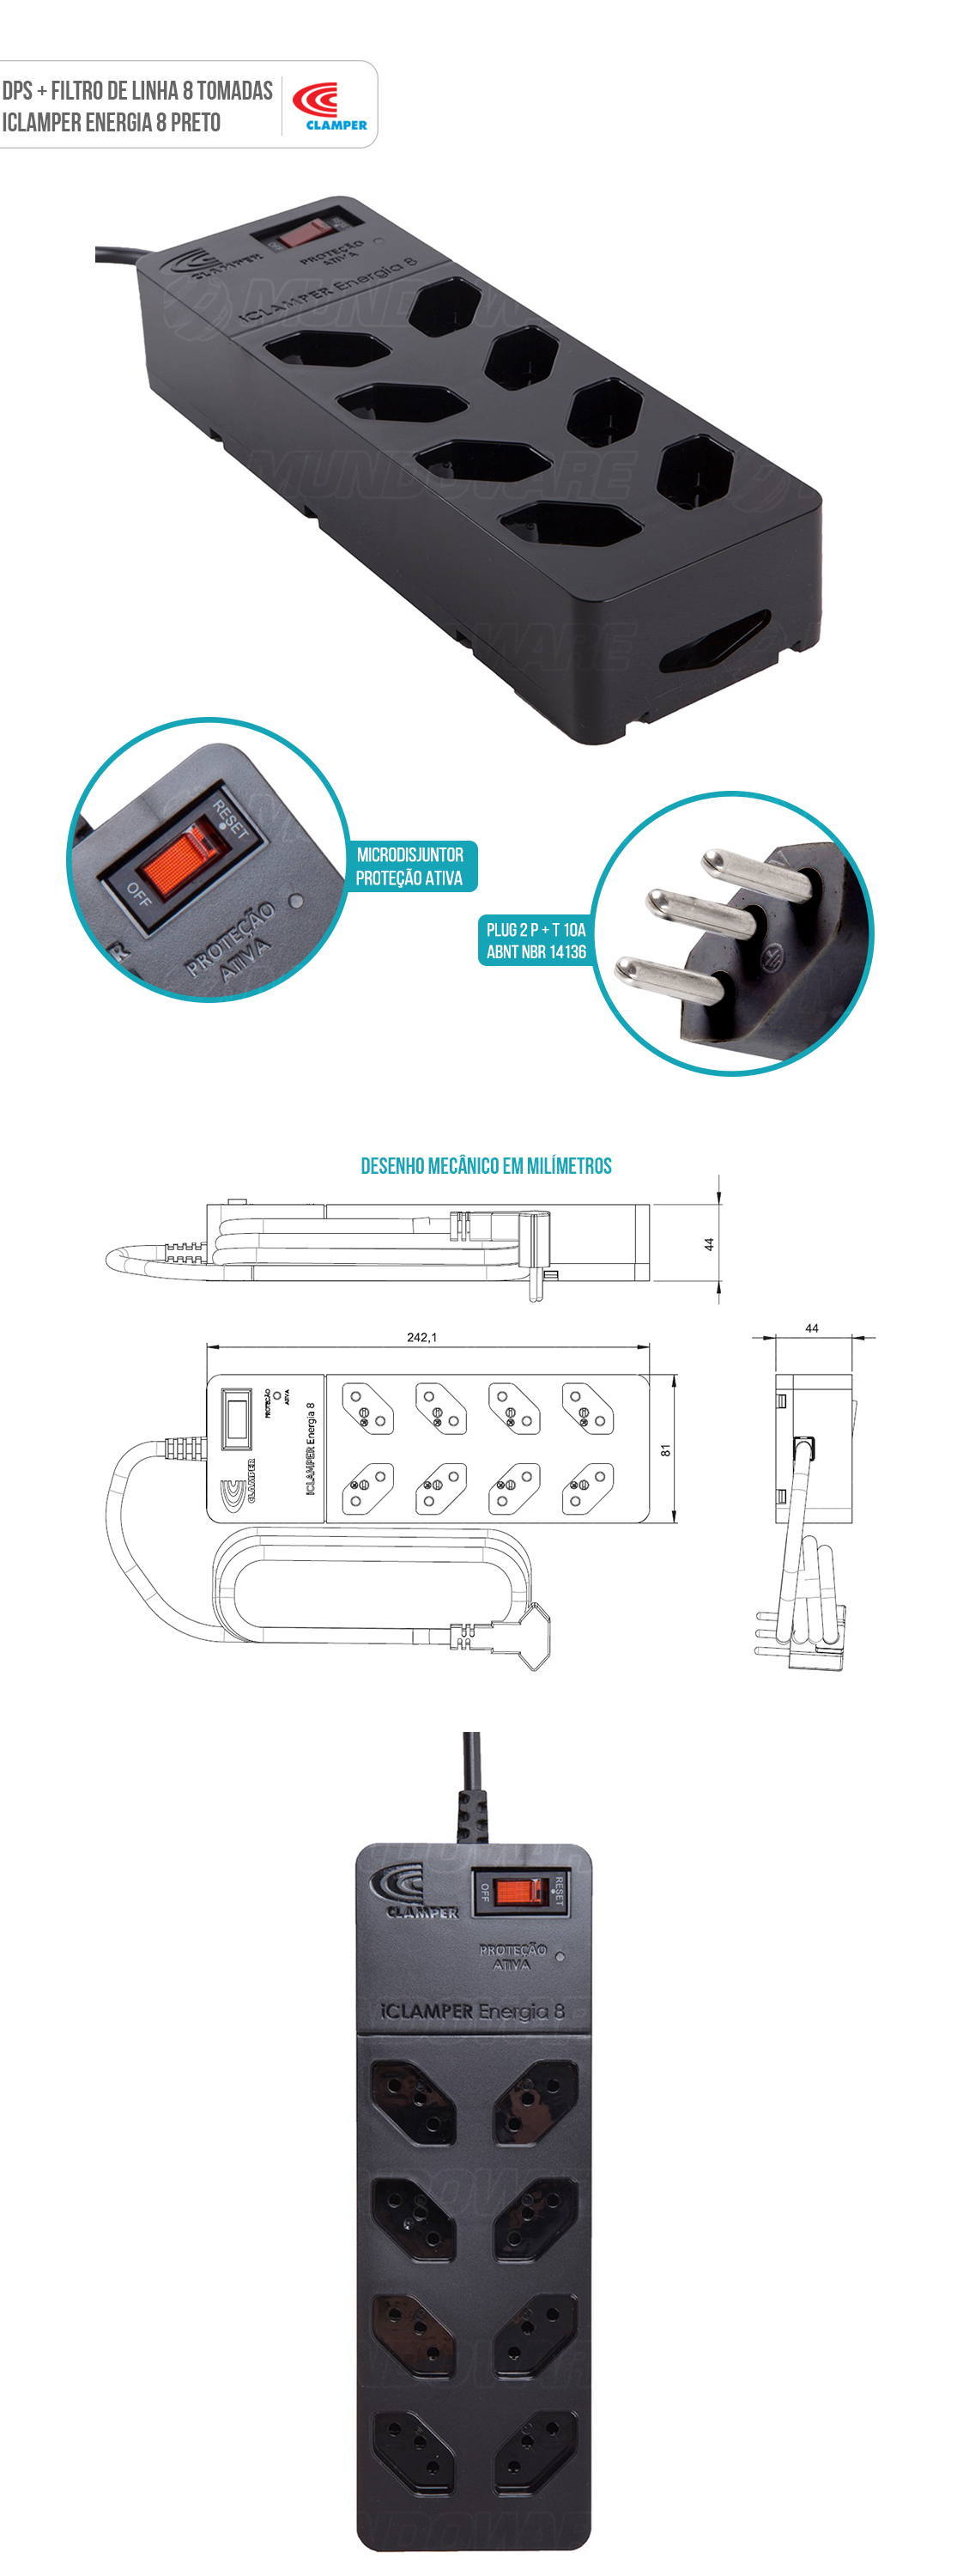 DPS Clamper Filtro de Linha com 8 Tomadas espaçadas Proteção Robusta contra Surtos Elétricos iClamper Energia 8 Clamper Preto